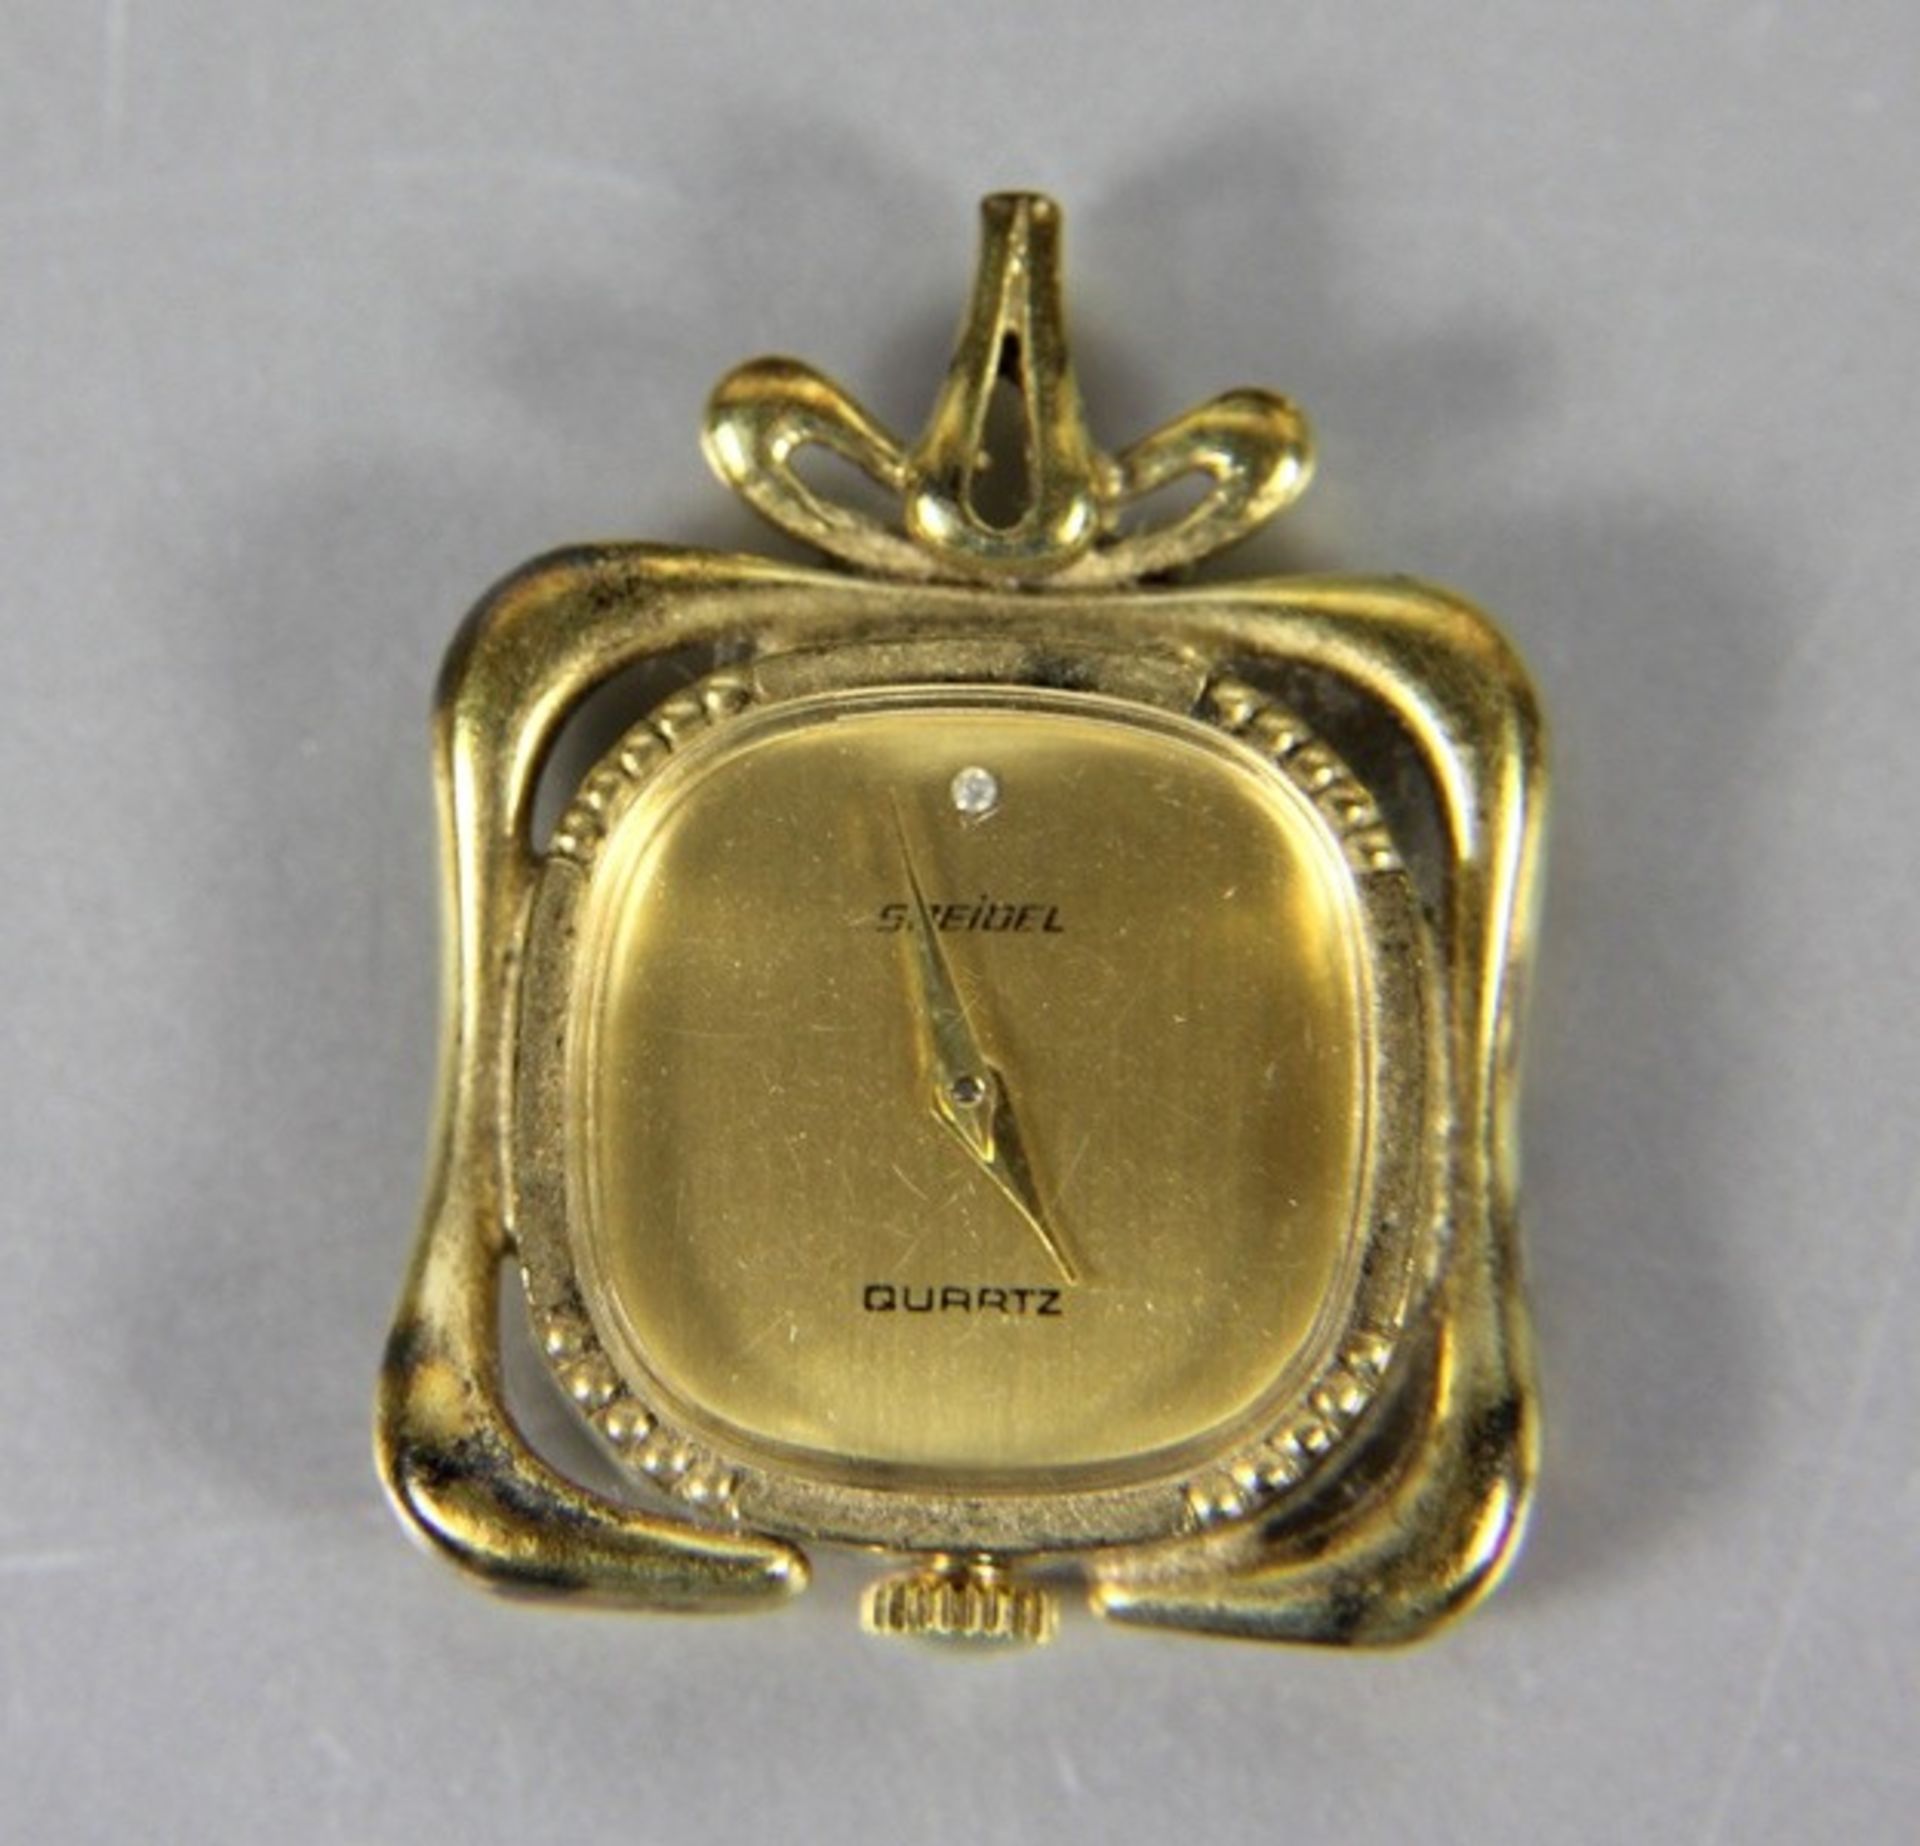 Kettenanhänger Uhr835er Silber vergoldet, Speidel, Uhr als Kettenanhänger, Quartz, gebr.sp.,